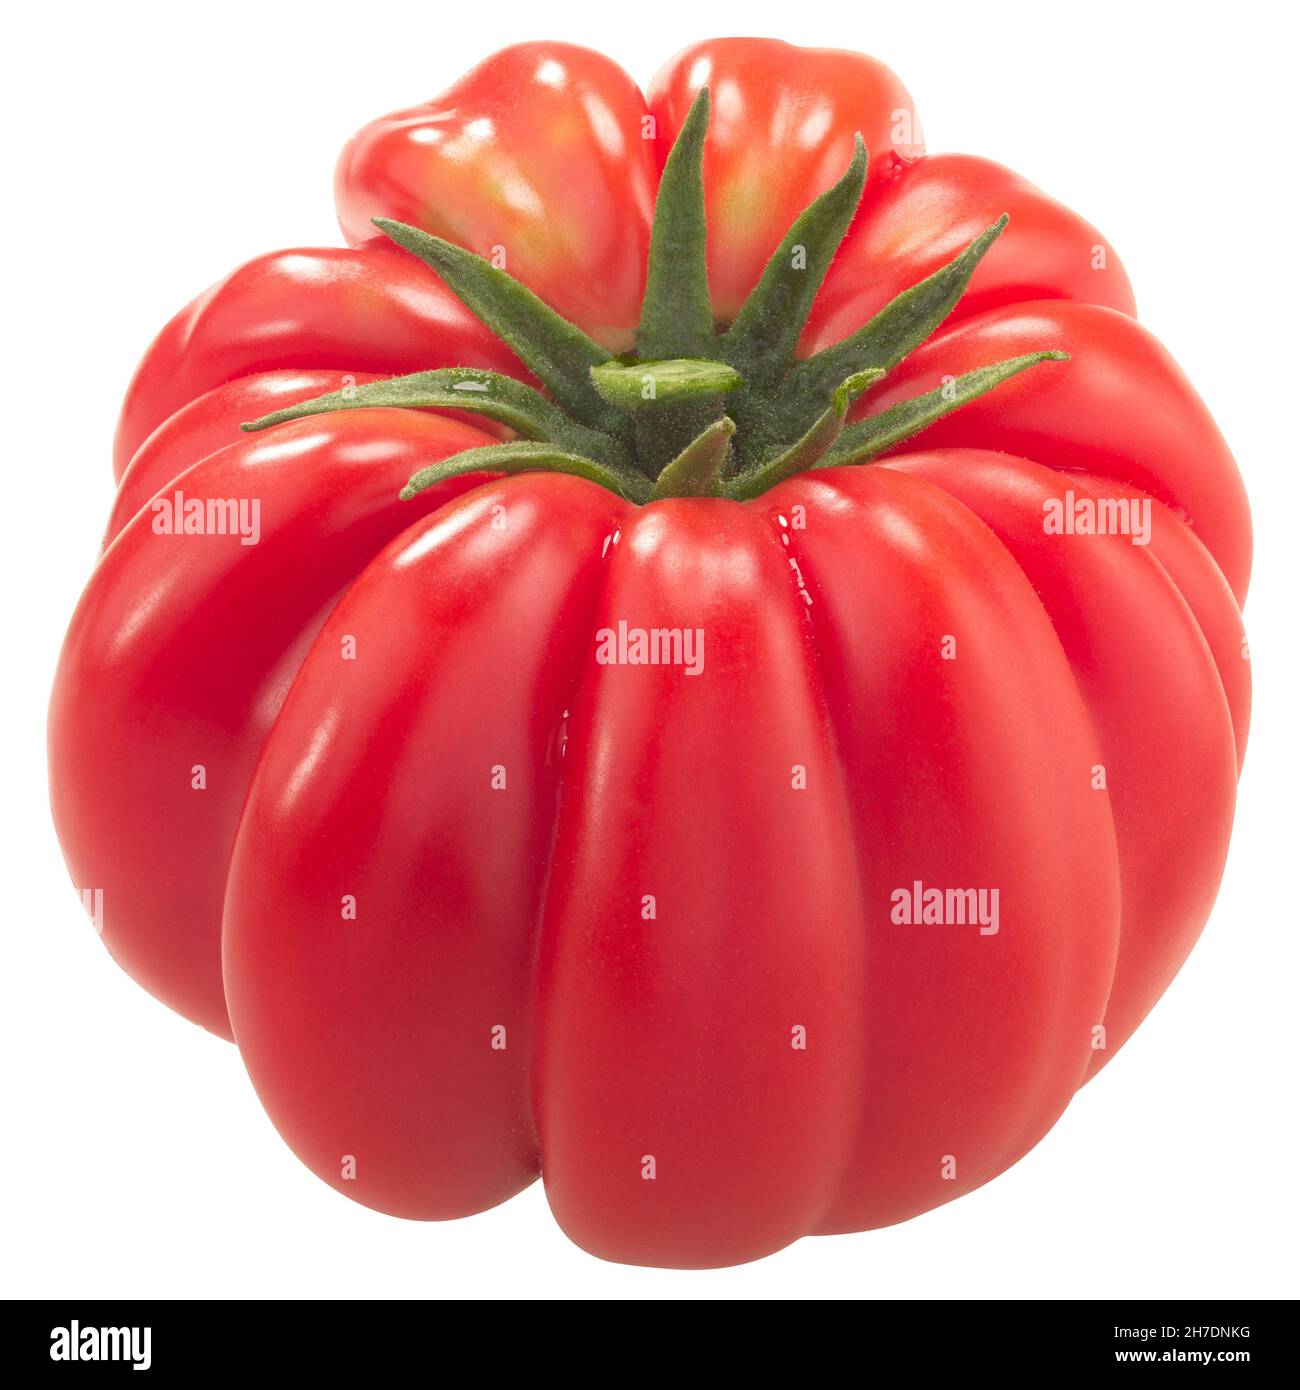 Ribbed heirloom tomato (Solanum lycopersicum fruit) isolated Stock Photo